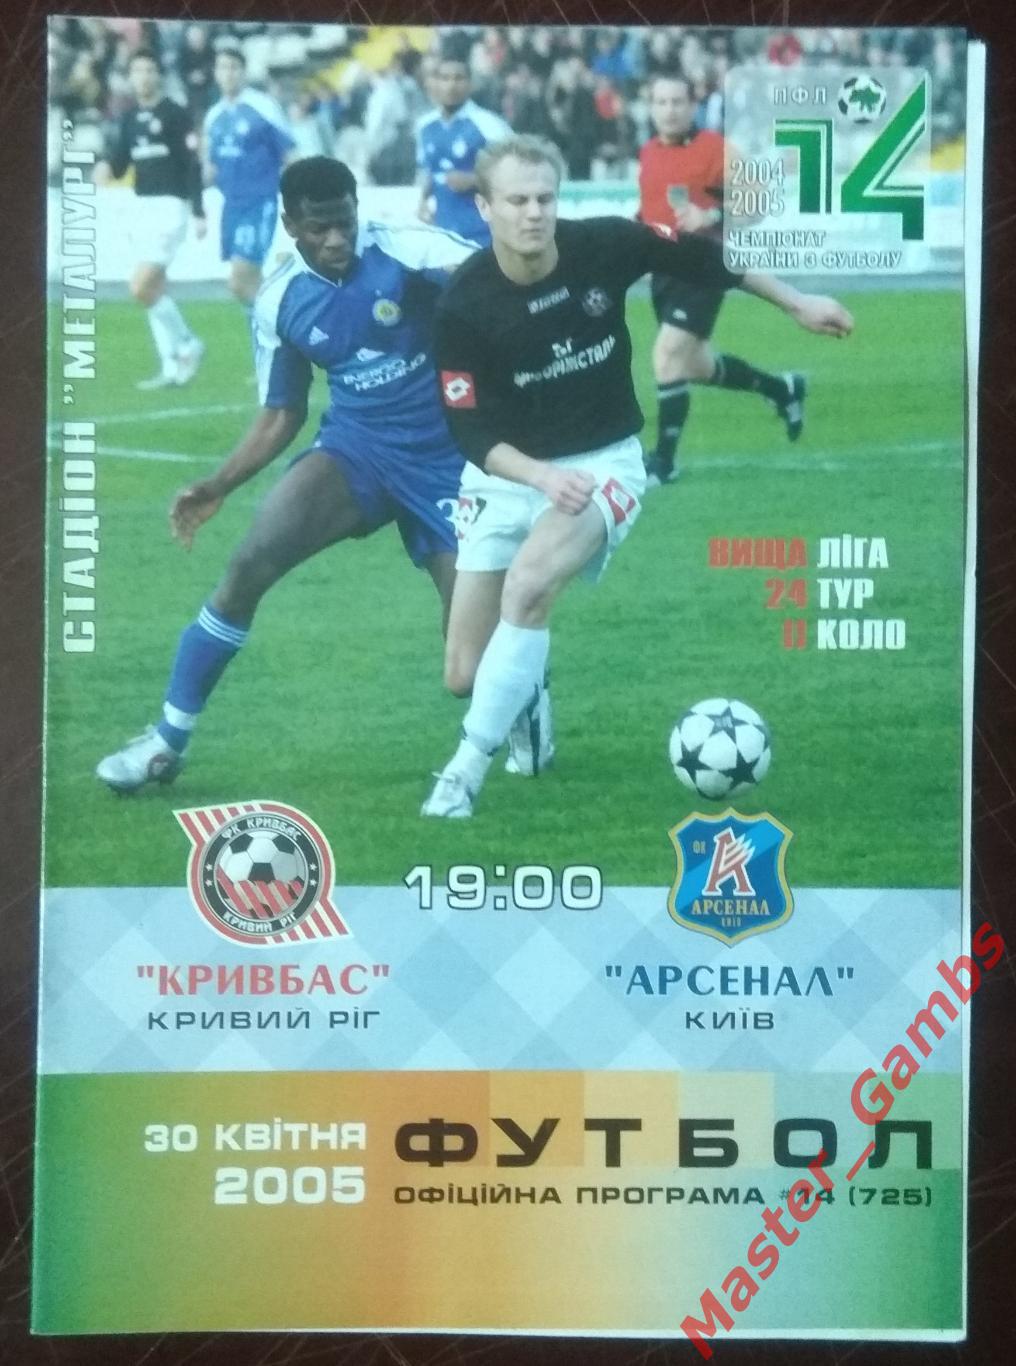 Кривбасс Кривой Рог - Арсенал Киев 2004/2005*